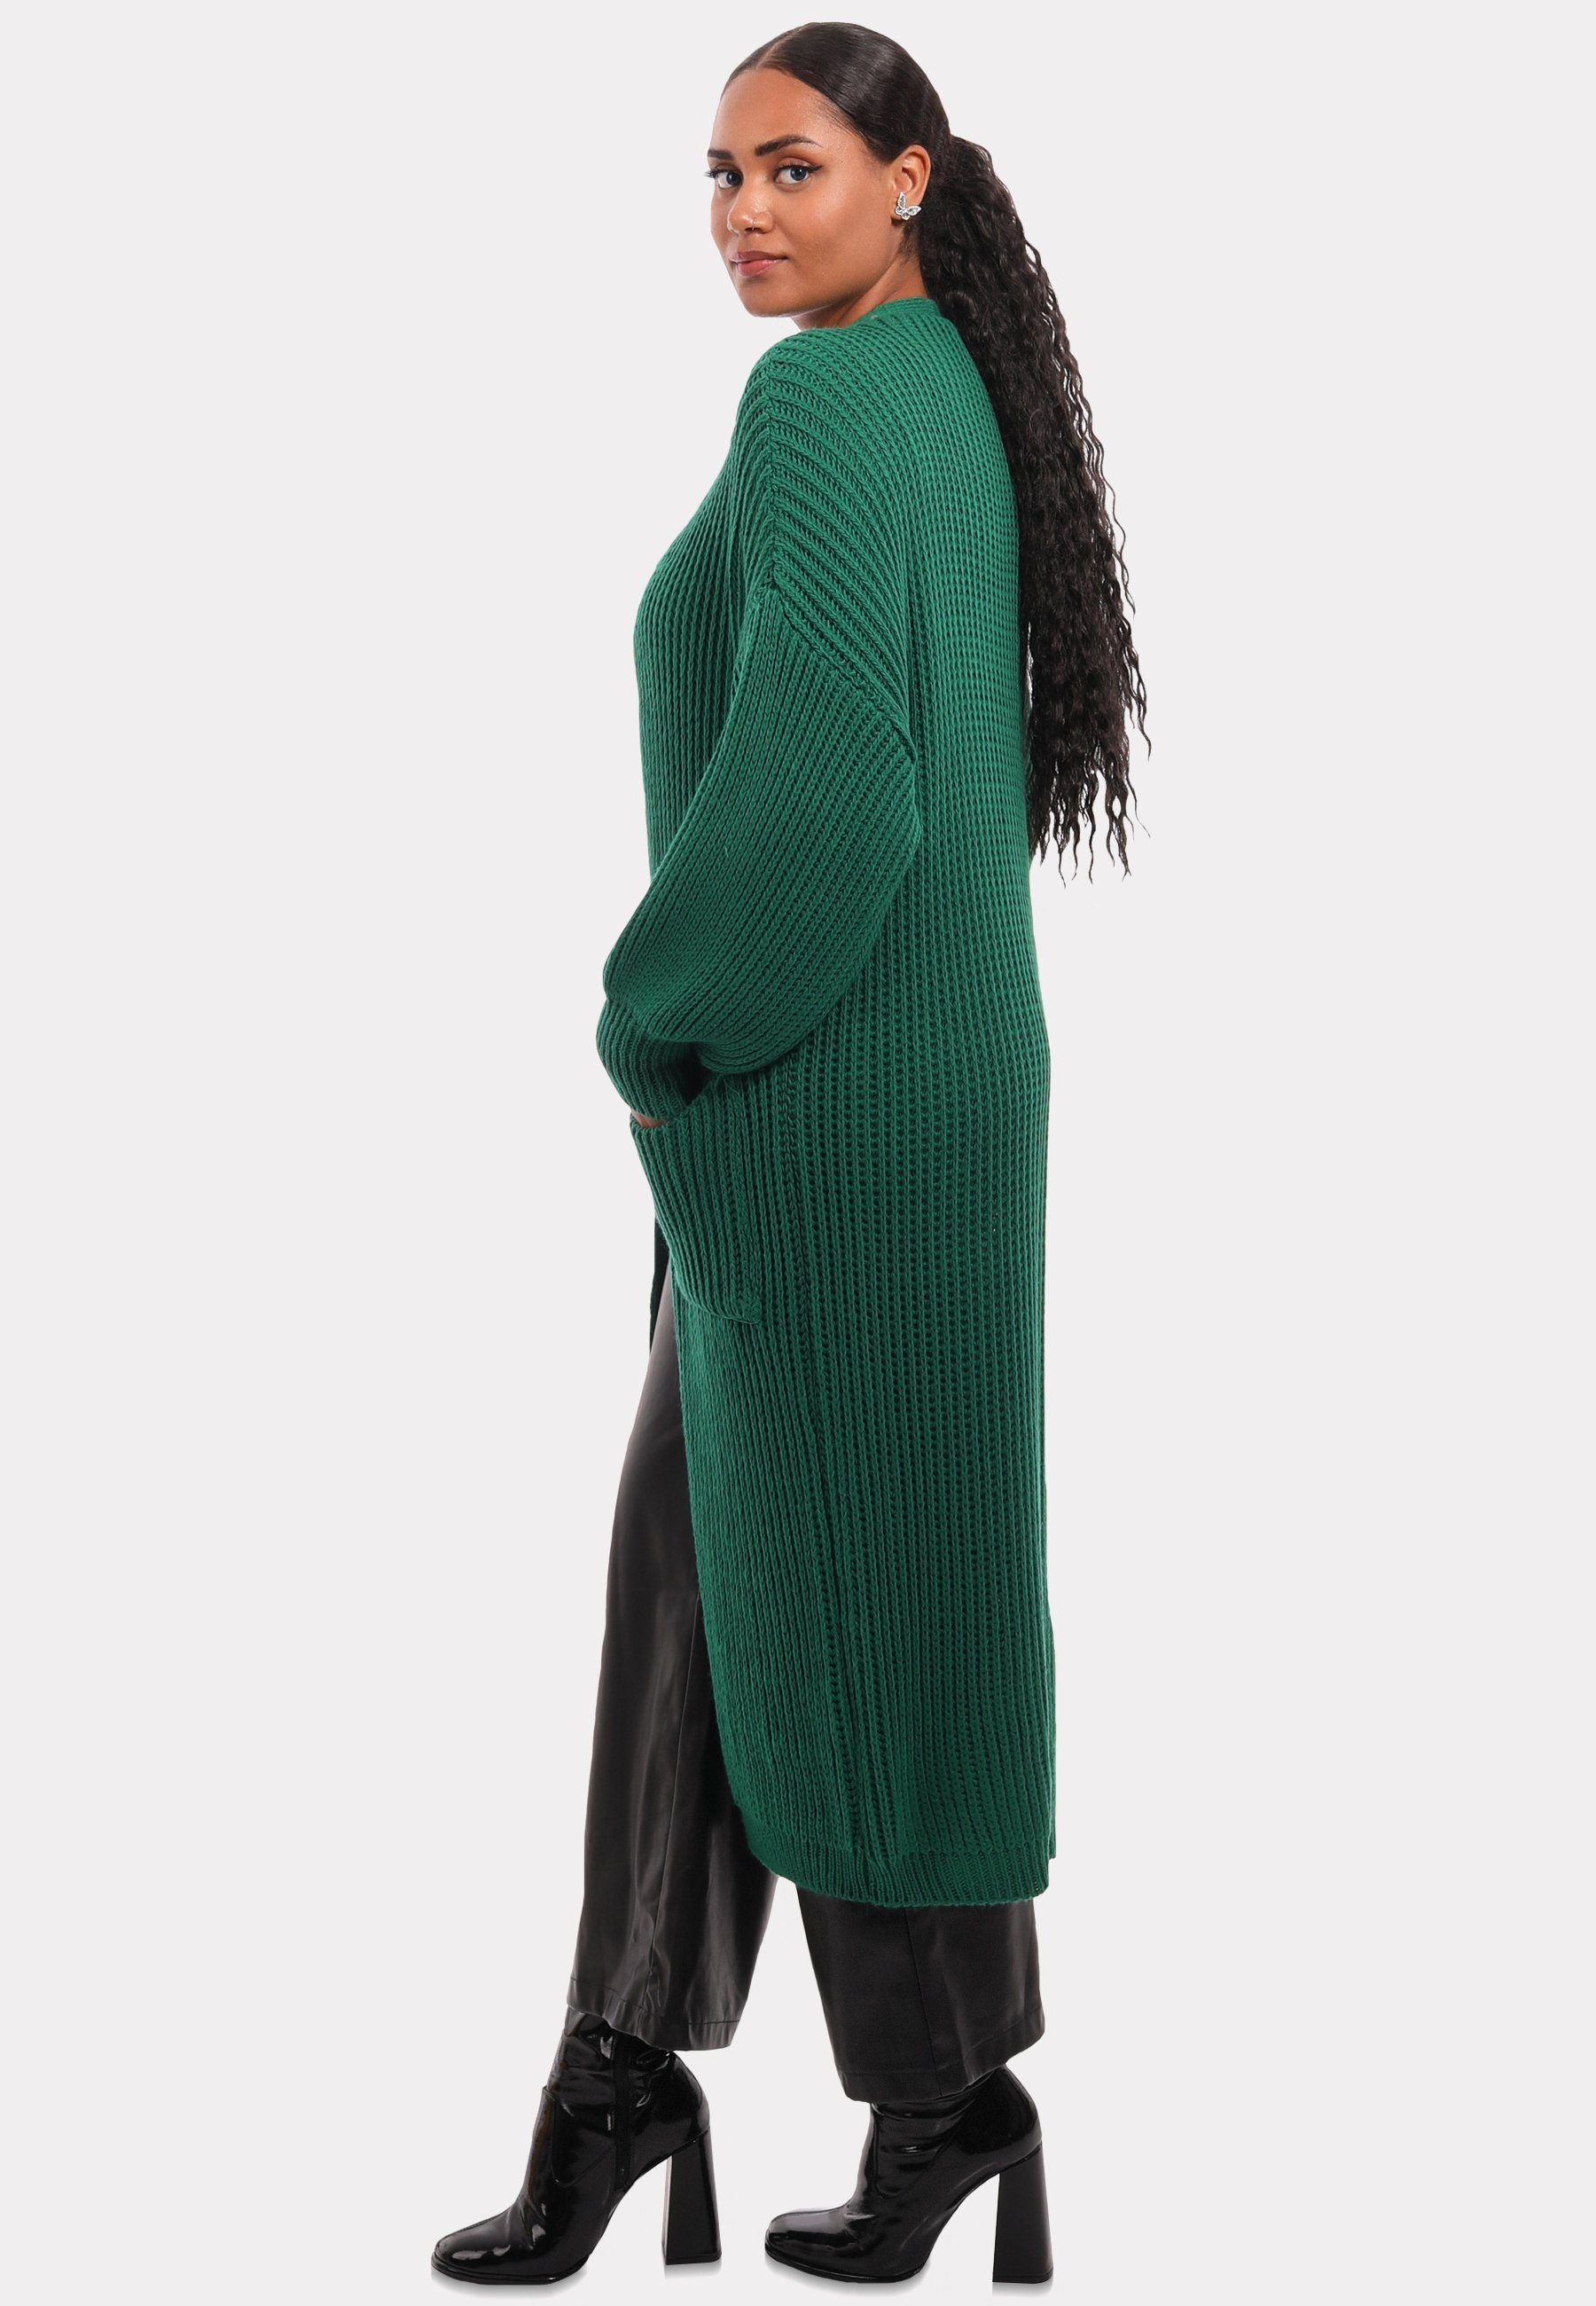 Cardigan Taschen Style YC & Unifarbe, Fashion Strickjacke in mit Cardigan aufgesetzten grün Verschlusslos Basic